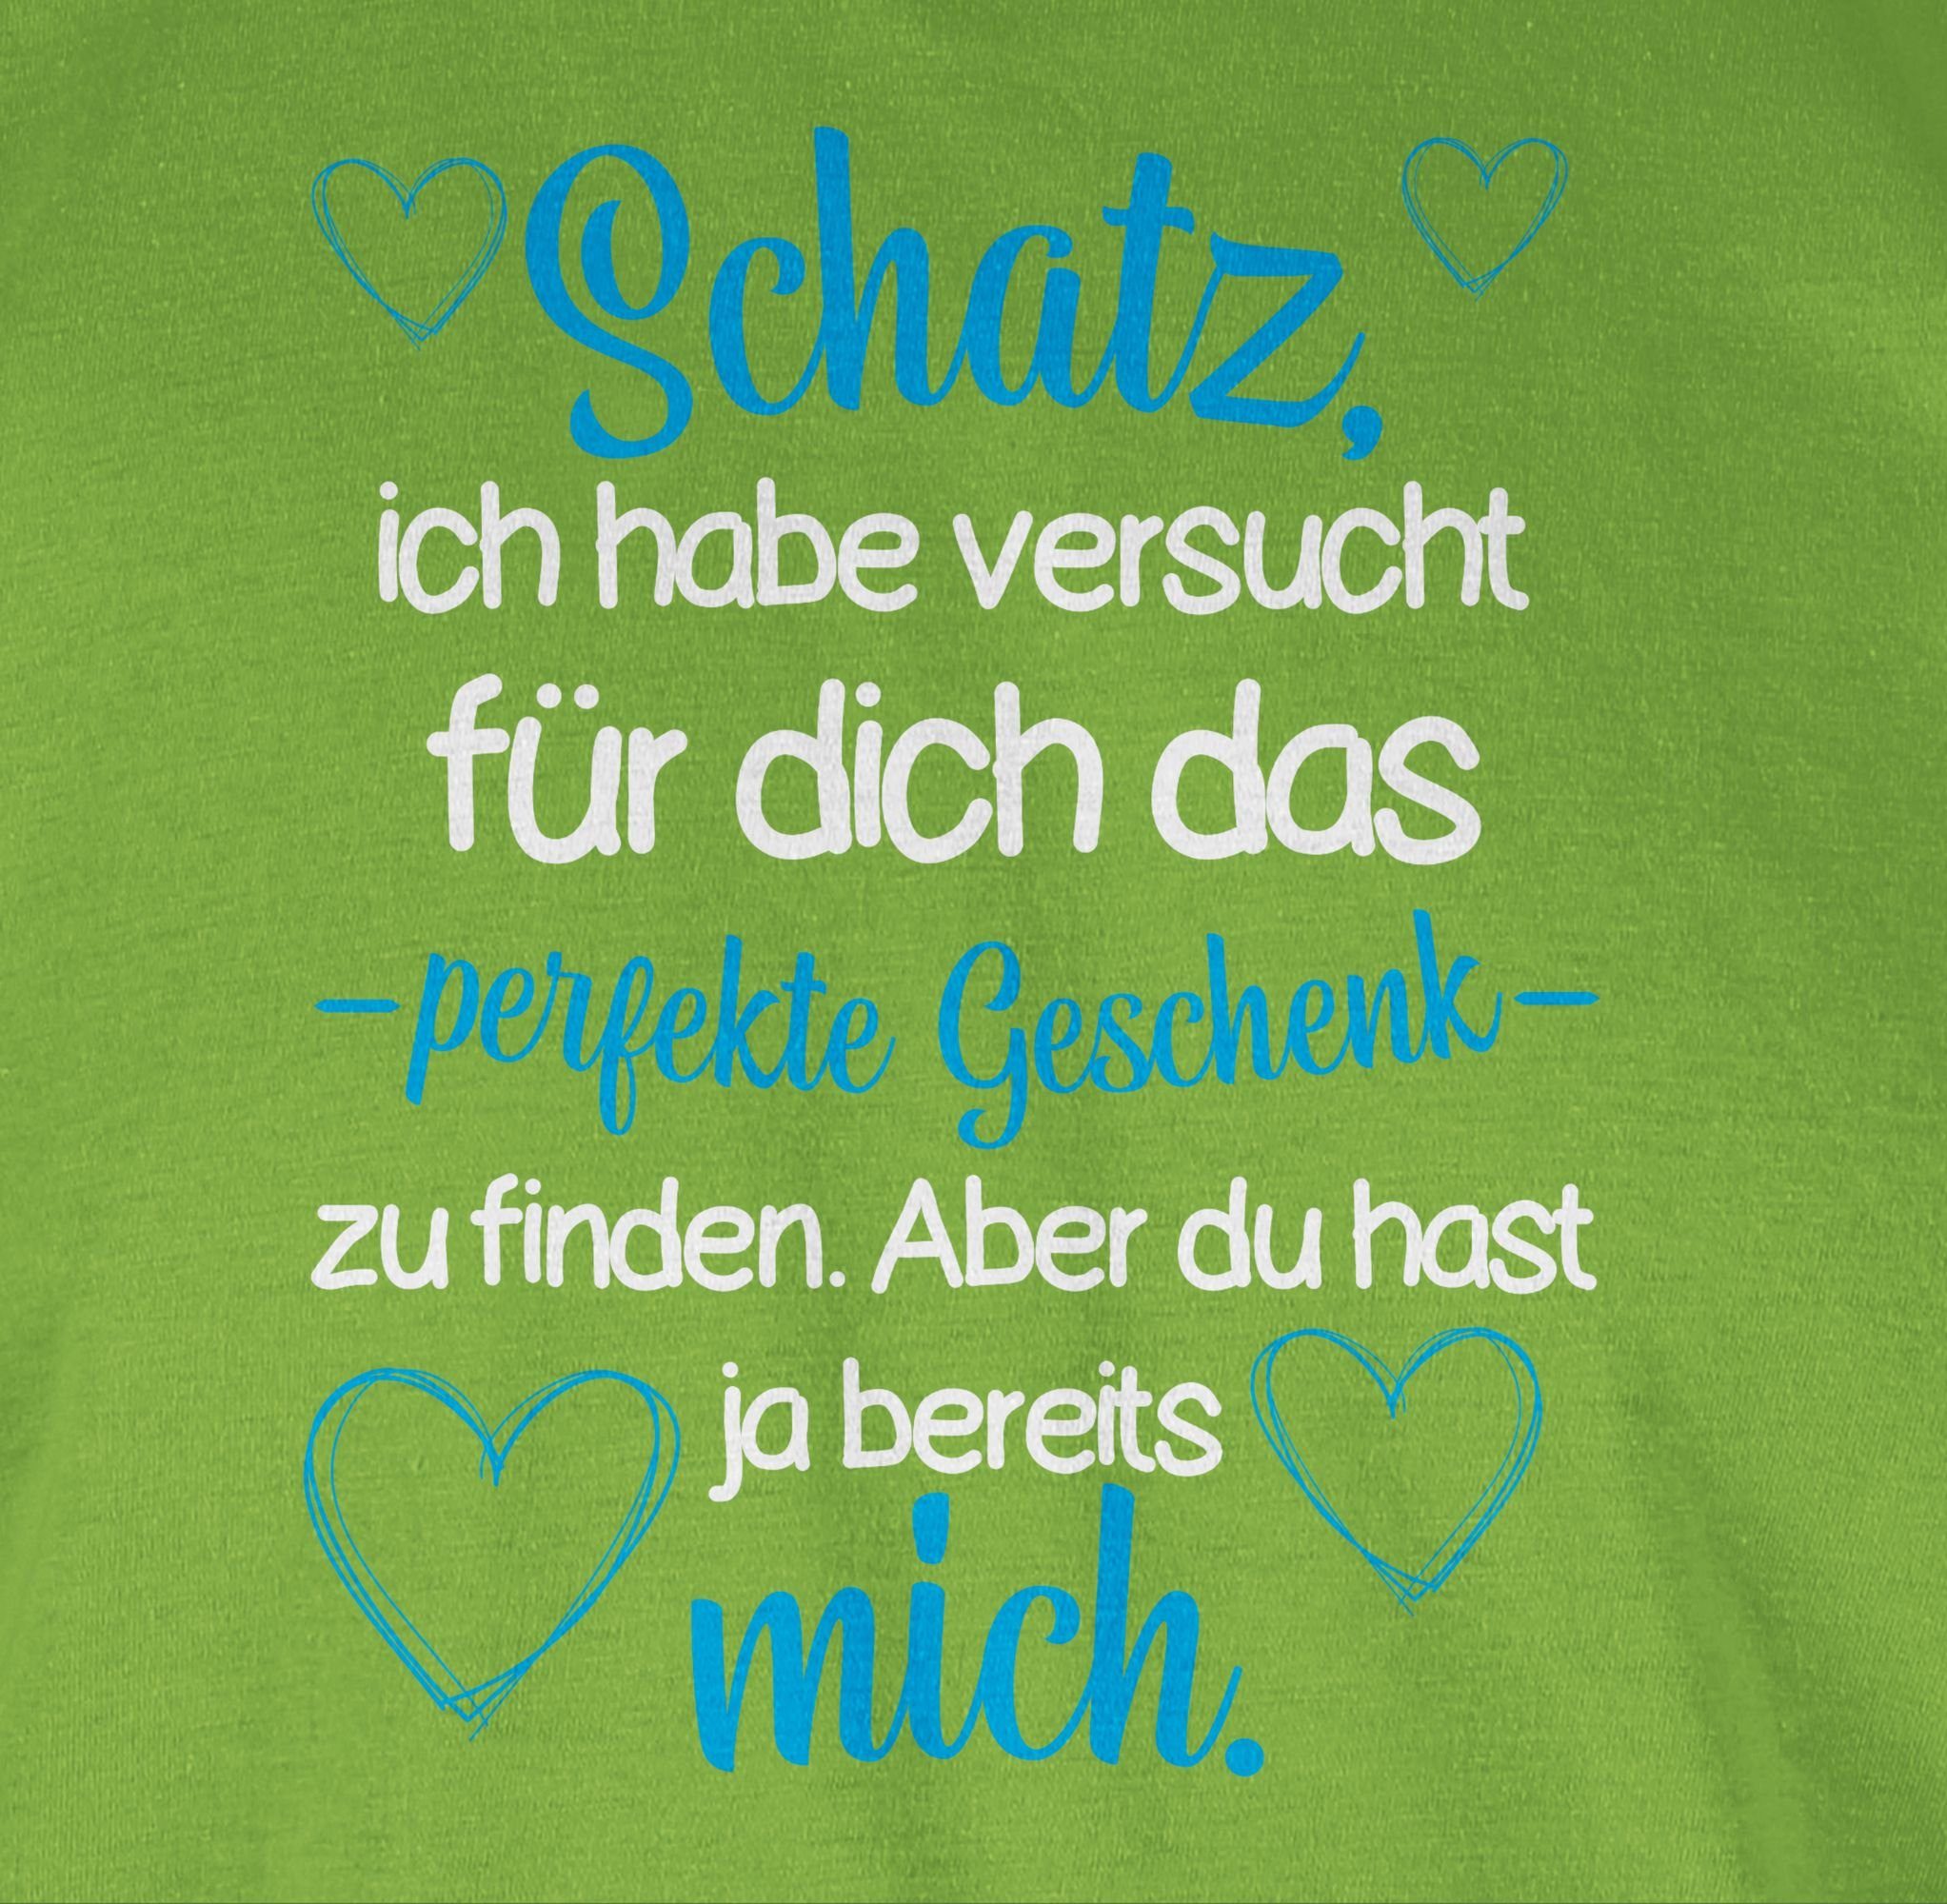 Shirtracer T-Shirt 03 Hellgrün Geschenk - finden zu Partner dich für perfekte Schatz Va Liebe das Valentinstag habe Ich versucht